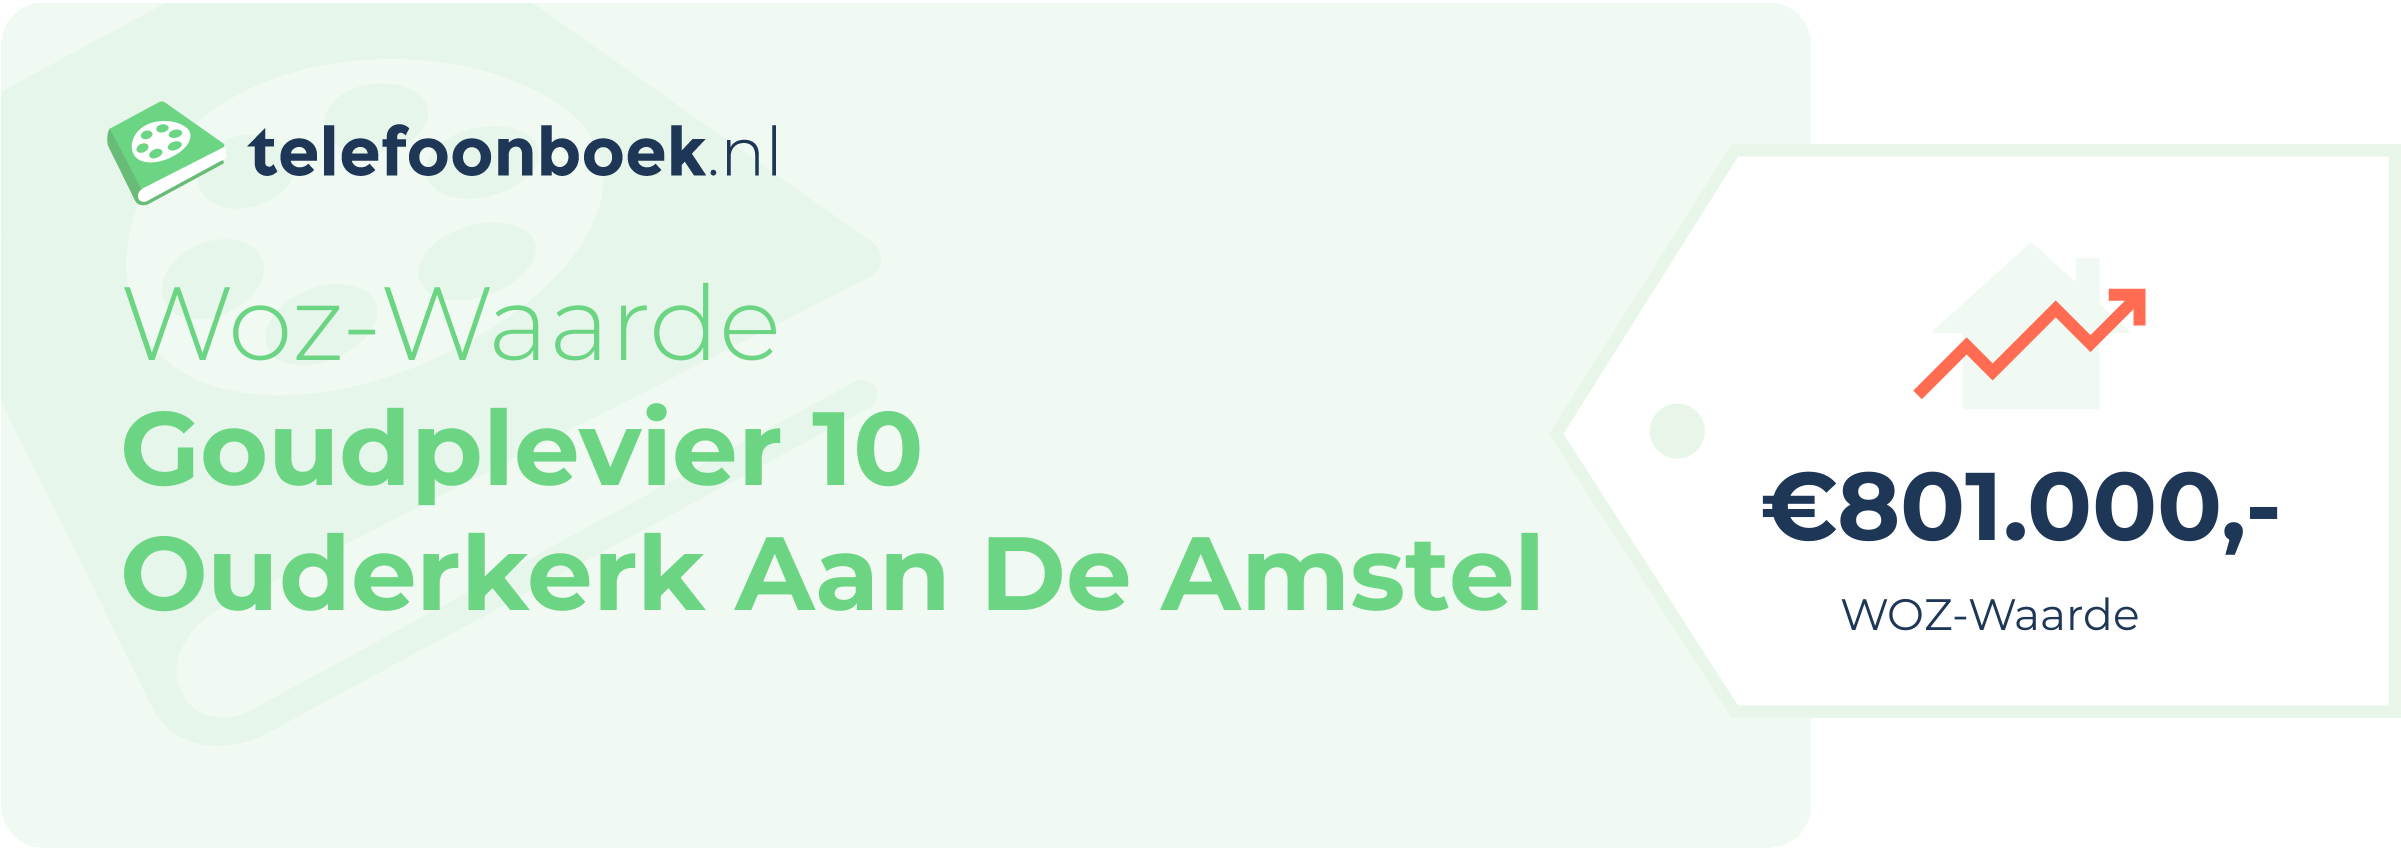 WOZ-waarde Goudplevier 10 Ouderkerk Aan De Amstel